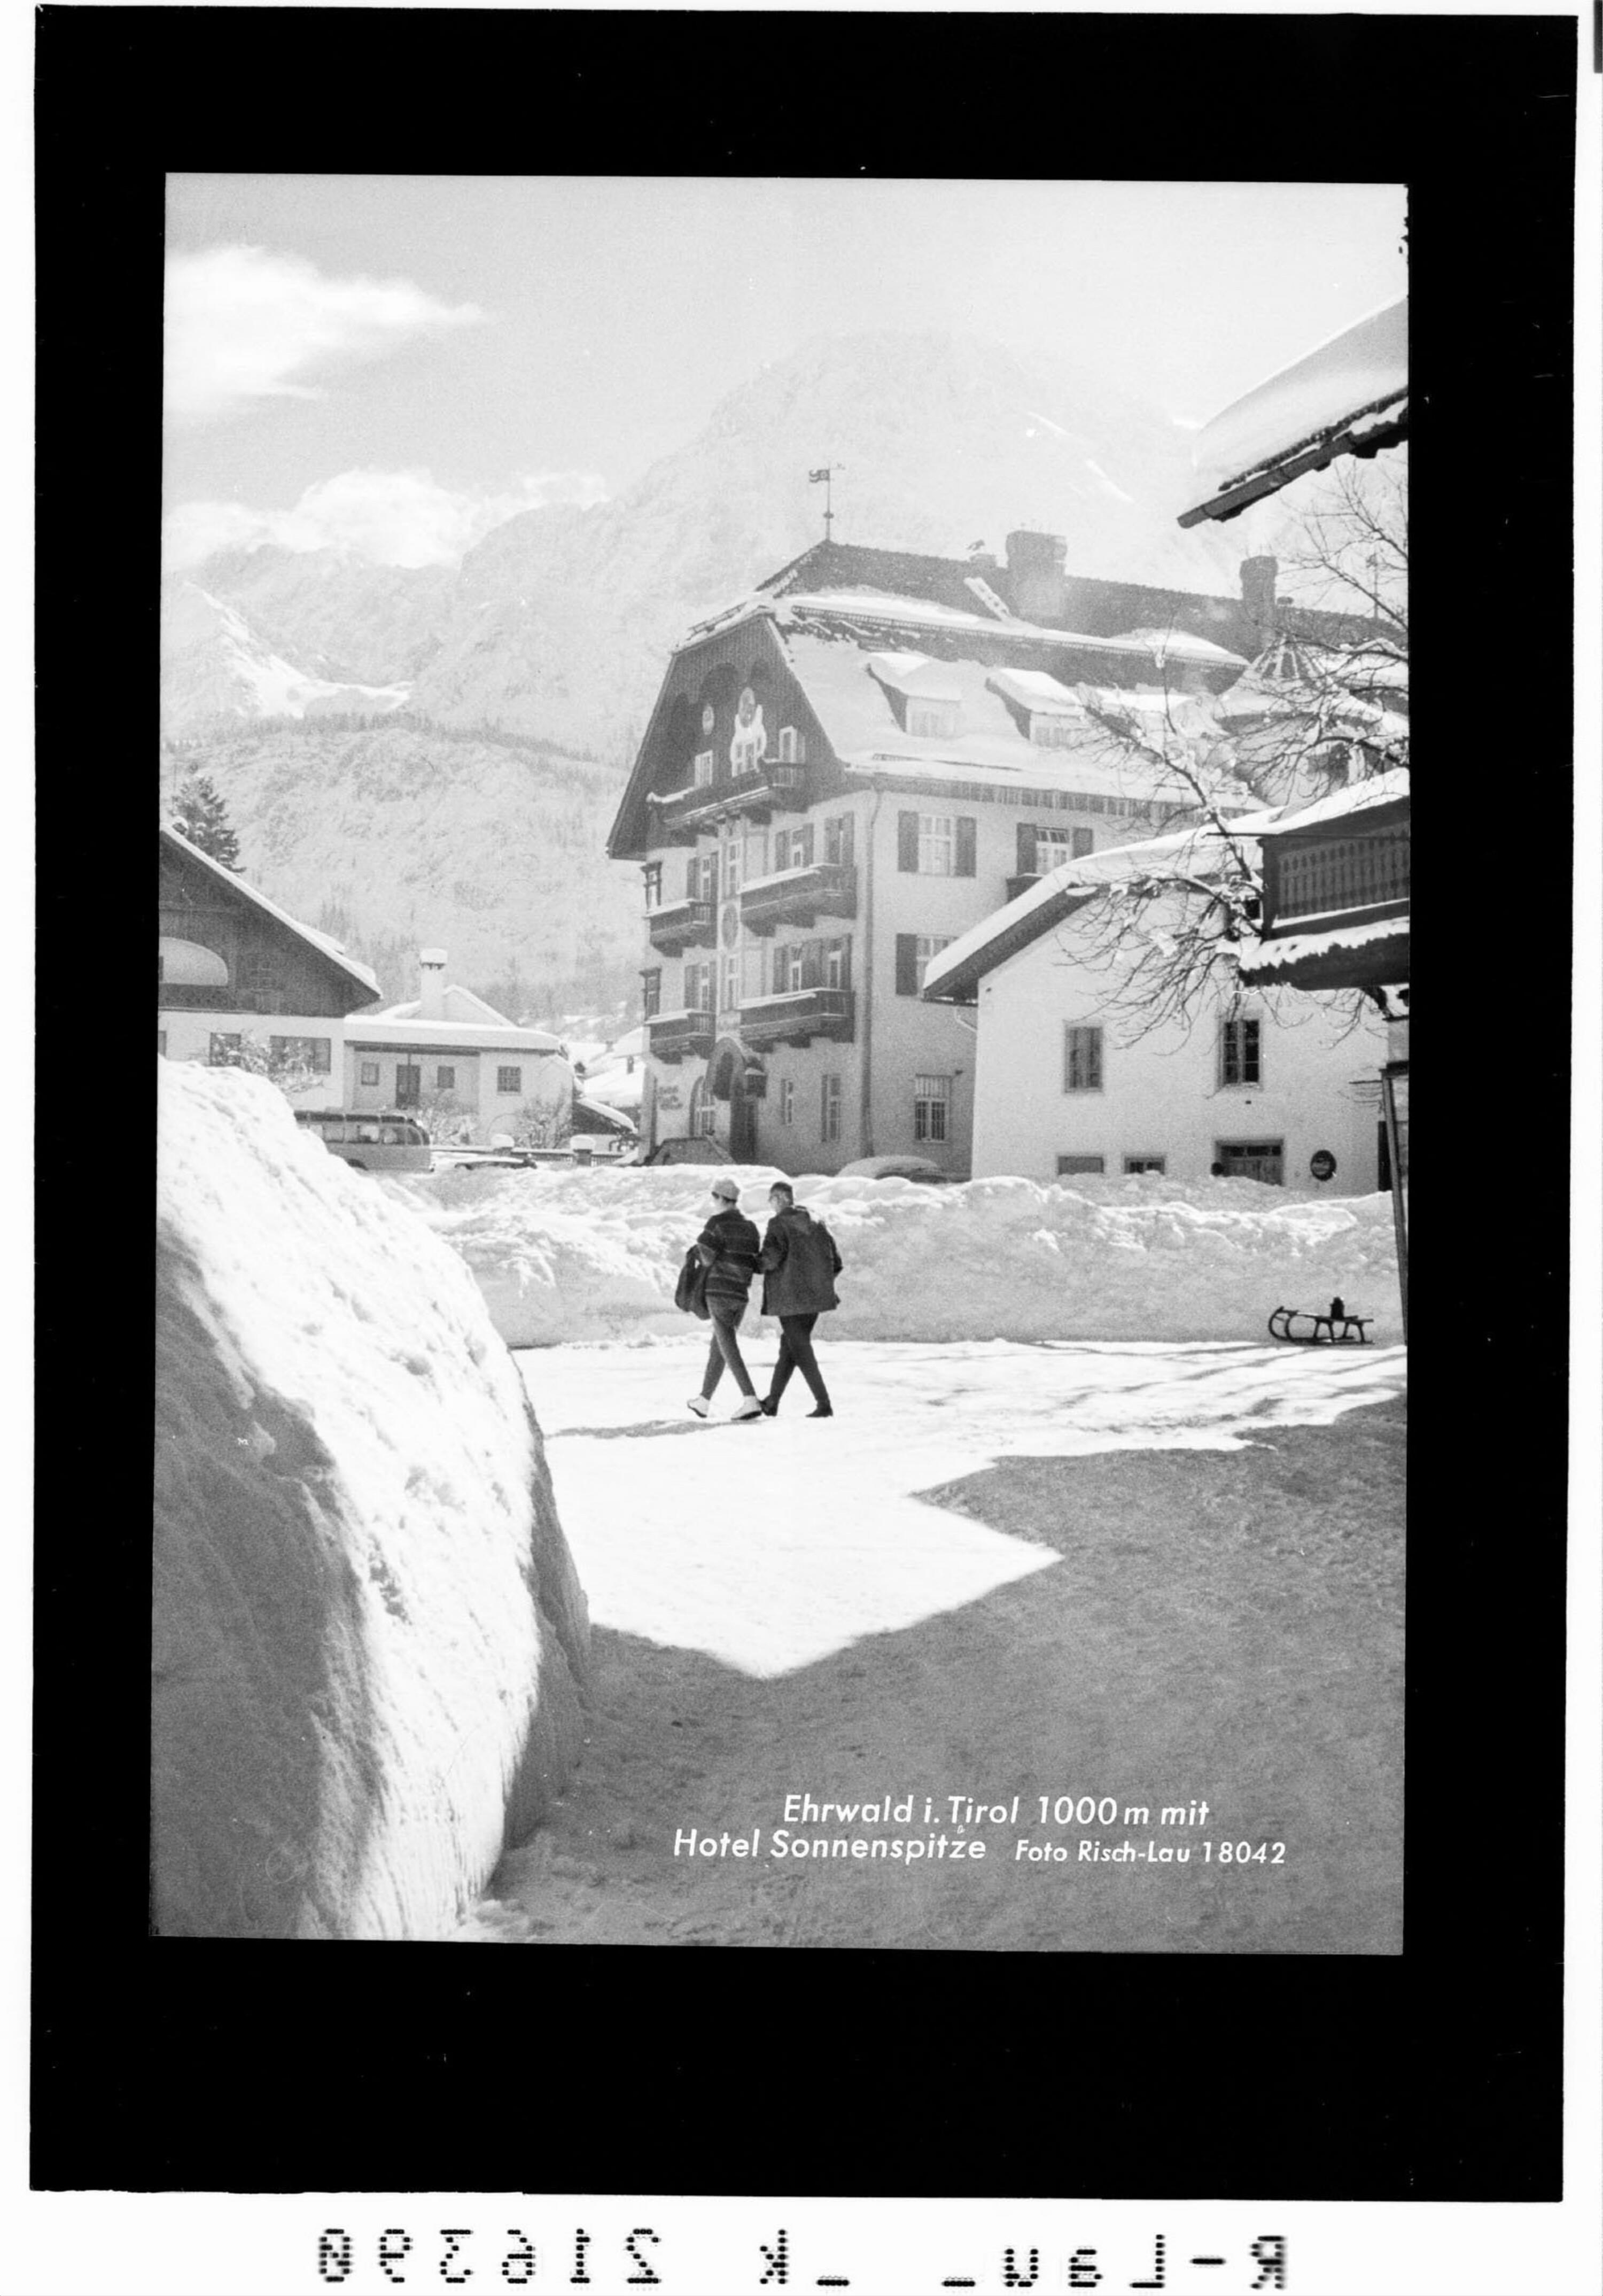 Ehrwald in Tirol 1000 m mit Hotel Sonnenspitze></div>


    <hr>
    <div class=